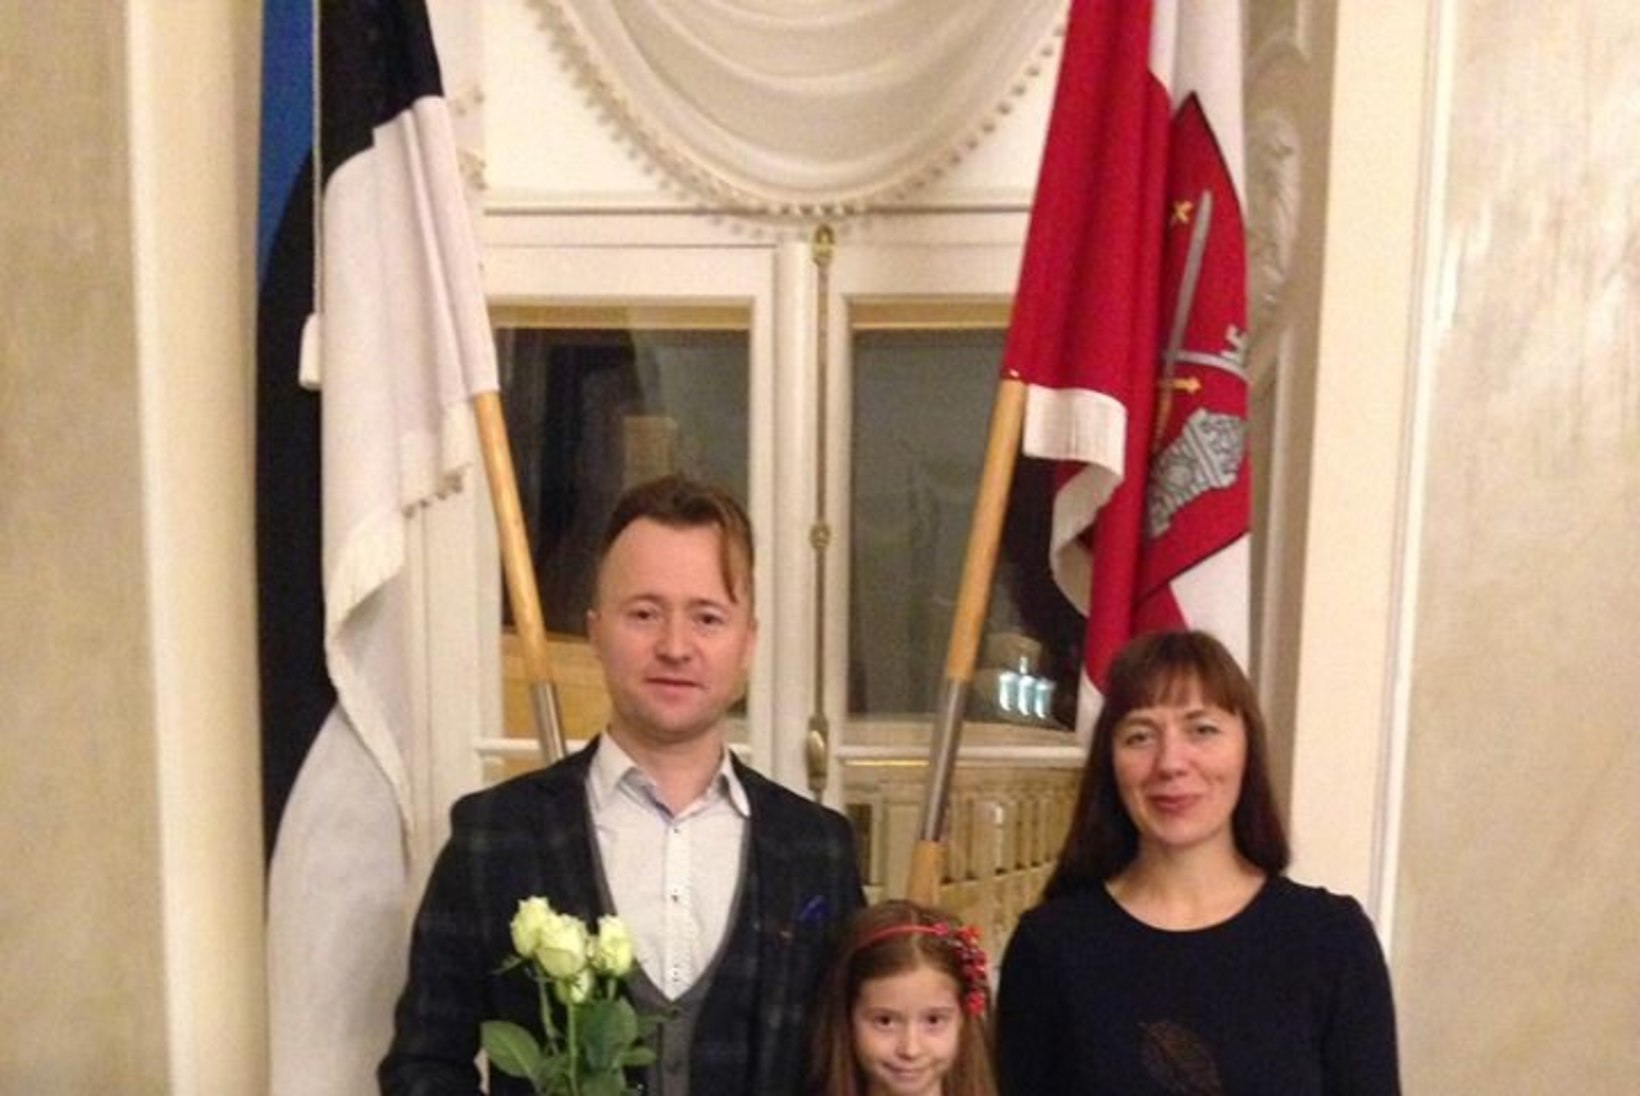 PALJU ÕNNE! Muusik Ruslan Trochynskyi sai pidulikult kätte kodakondsustunnistuse!